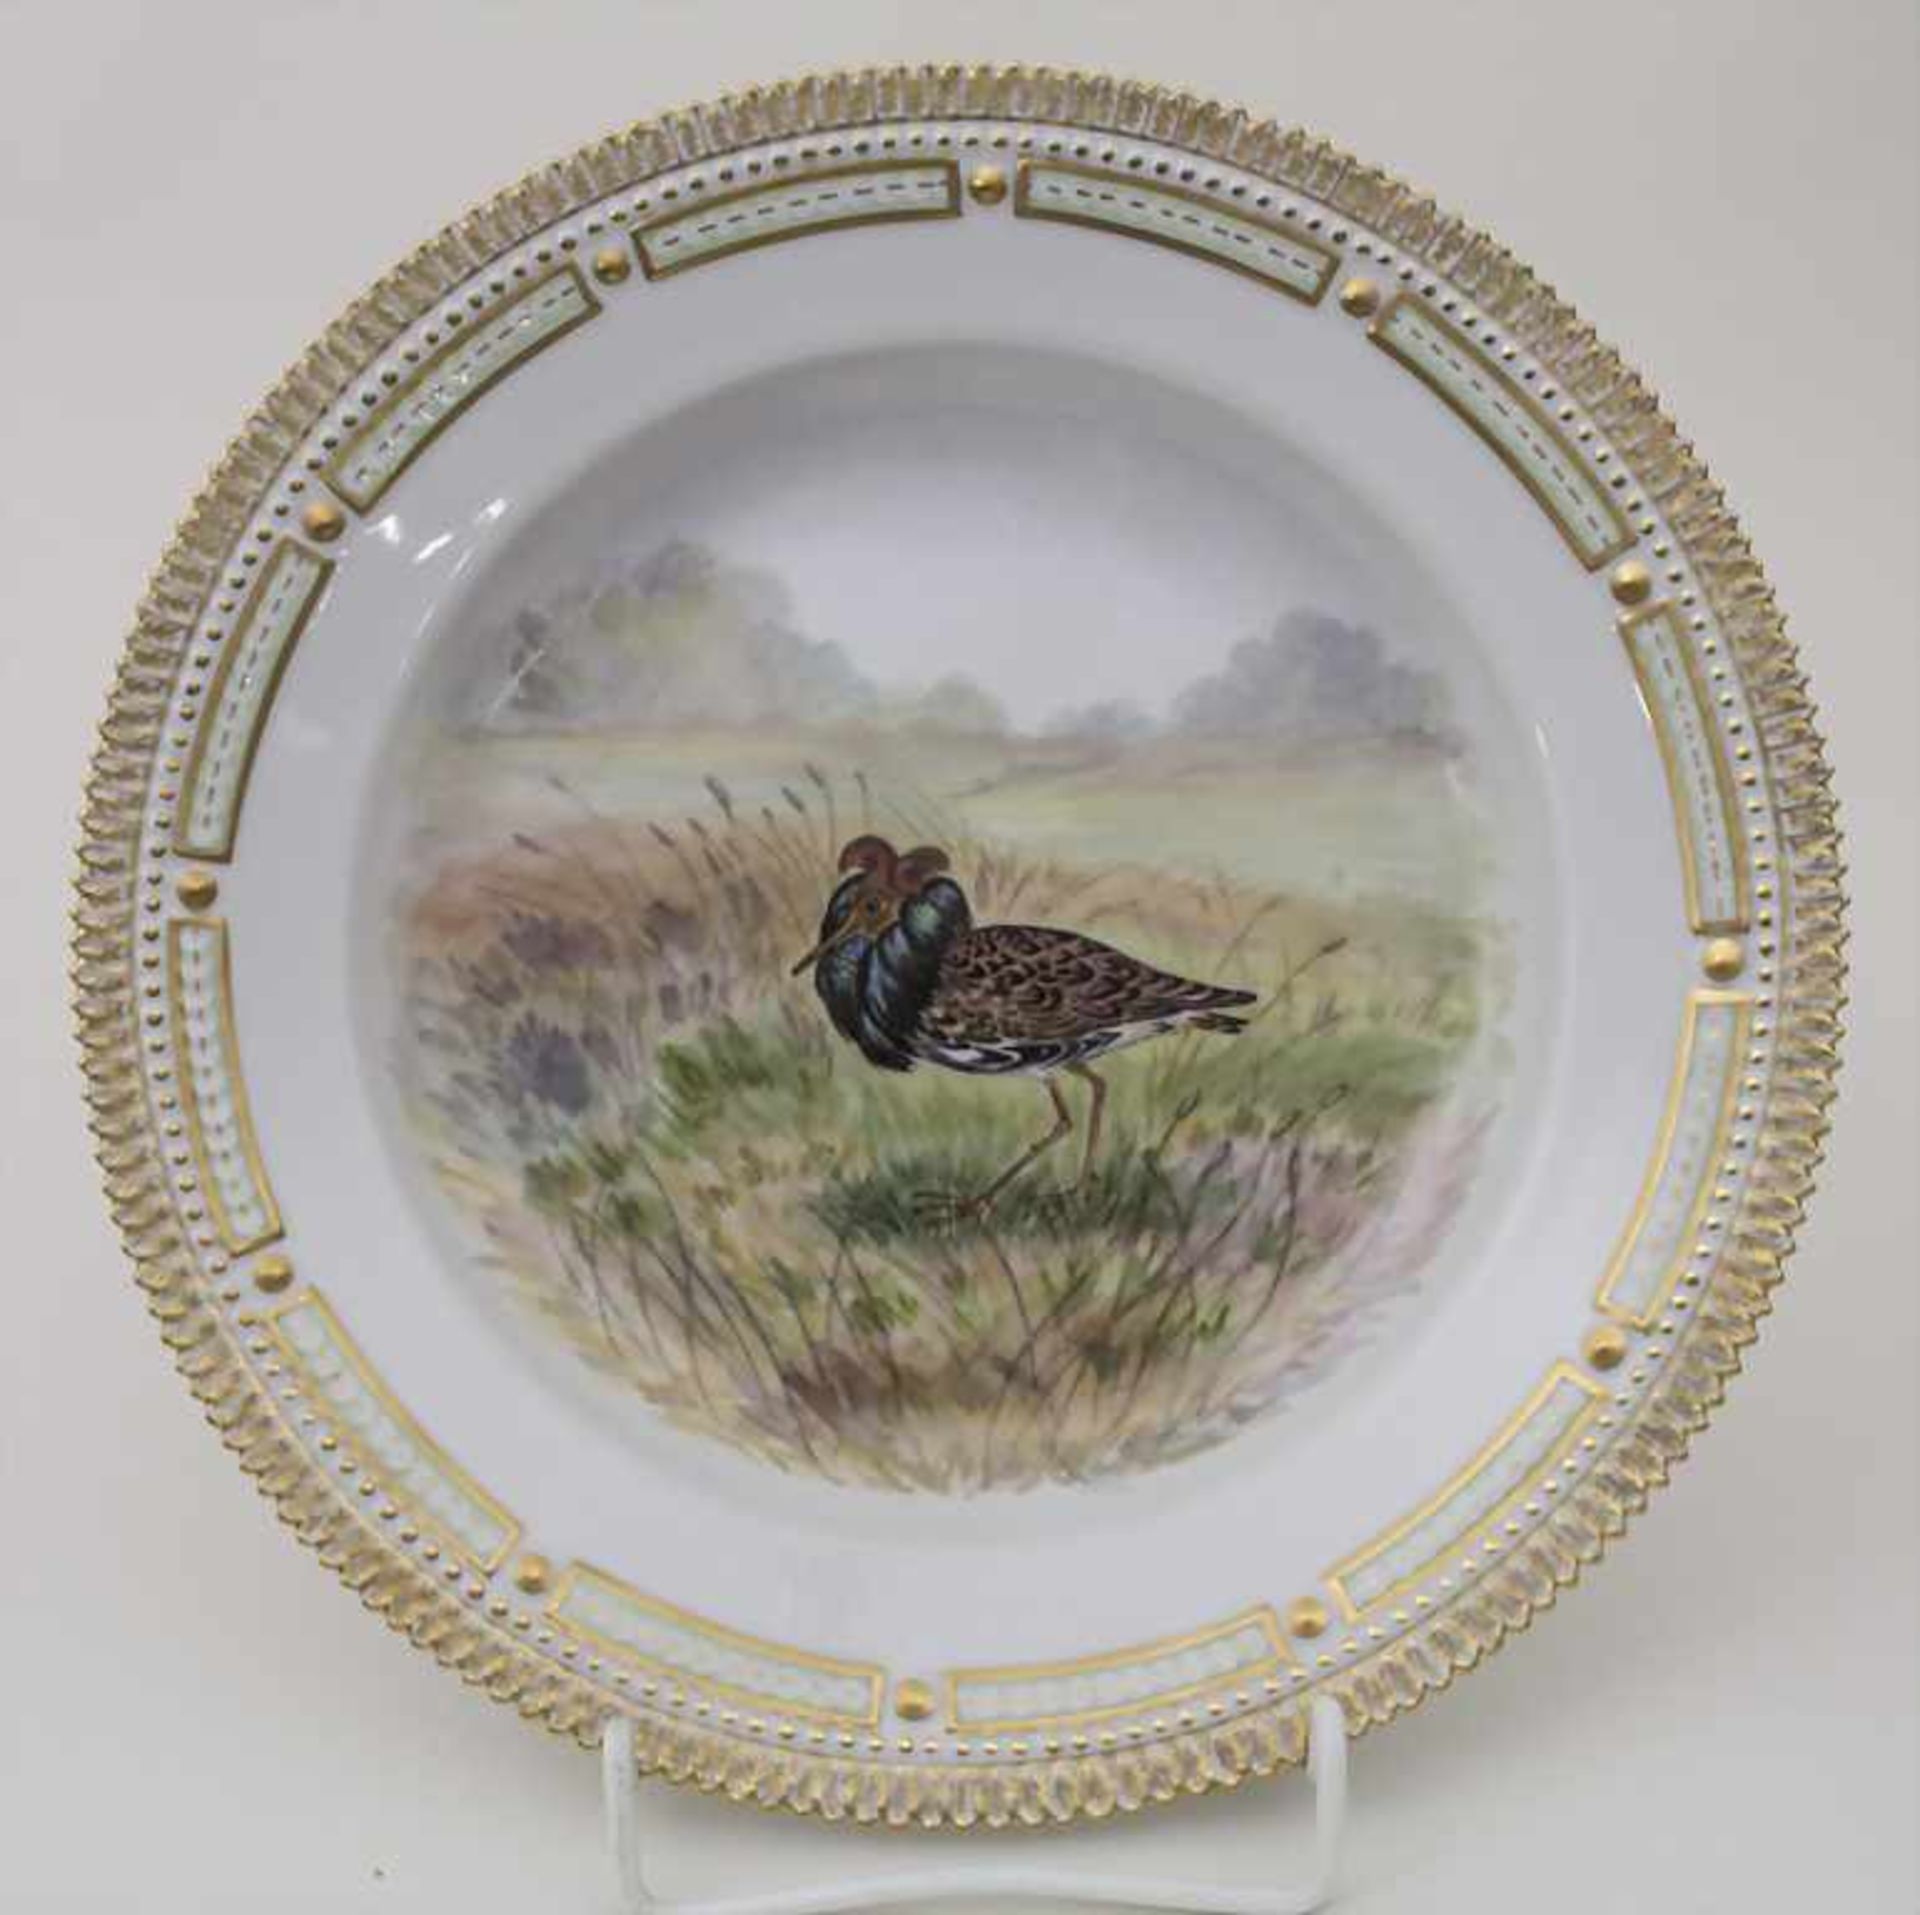 Teller mit Kampfläufer / A plate with a ruff (bird), Flora Danica, Royal Copenhagen, 20. Jh.